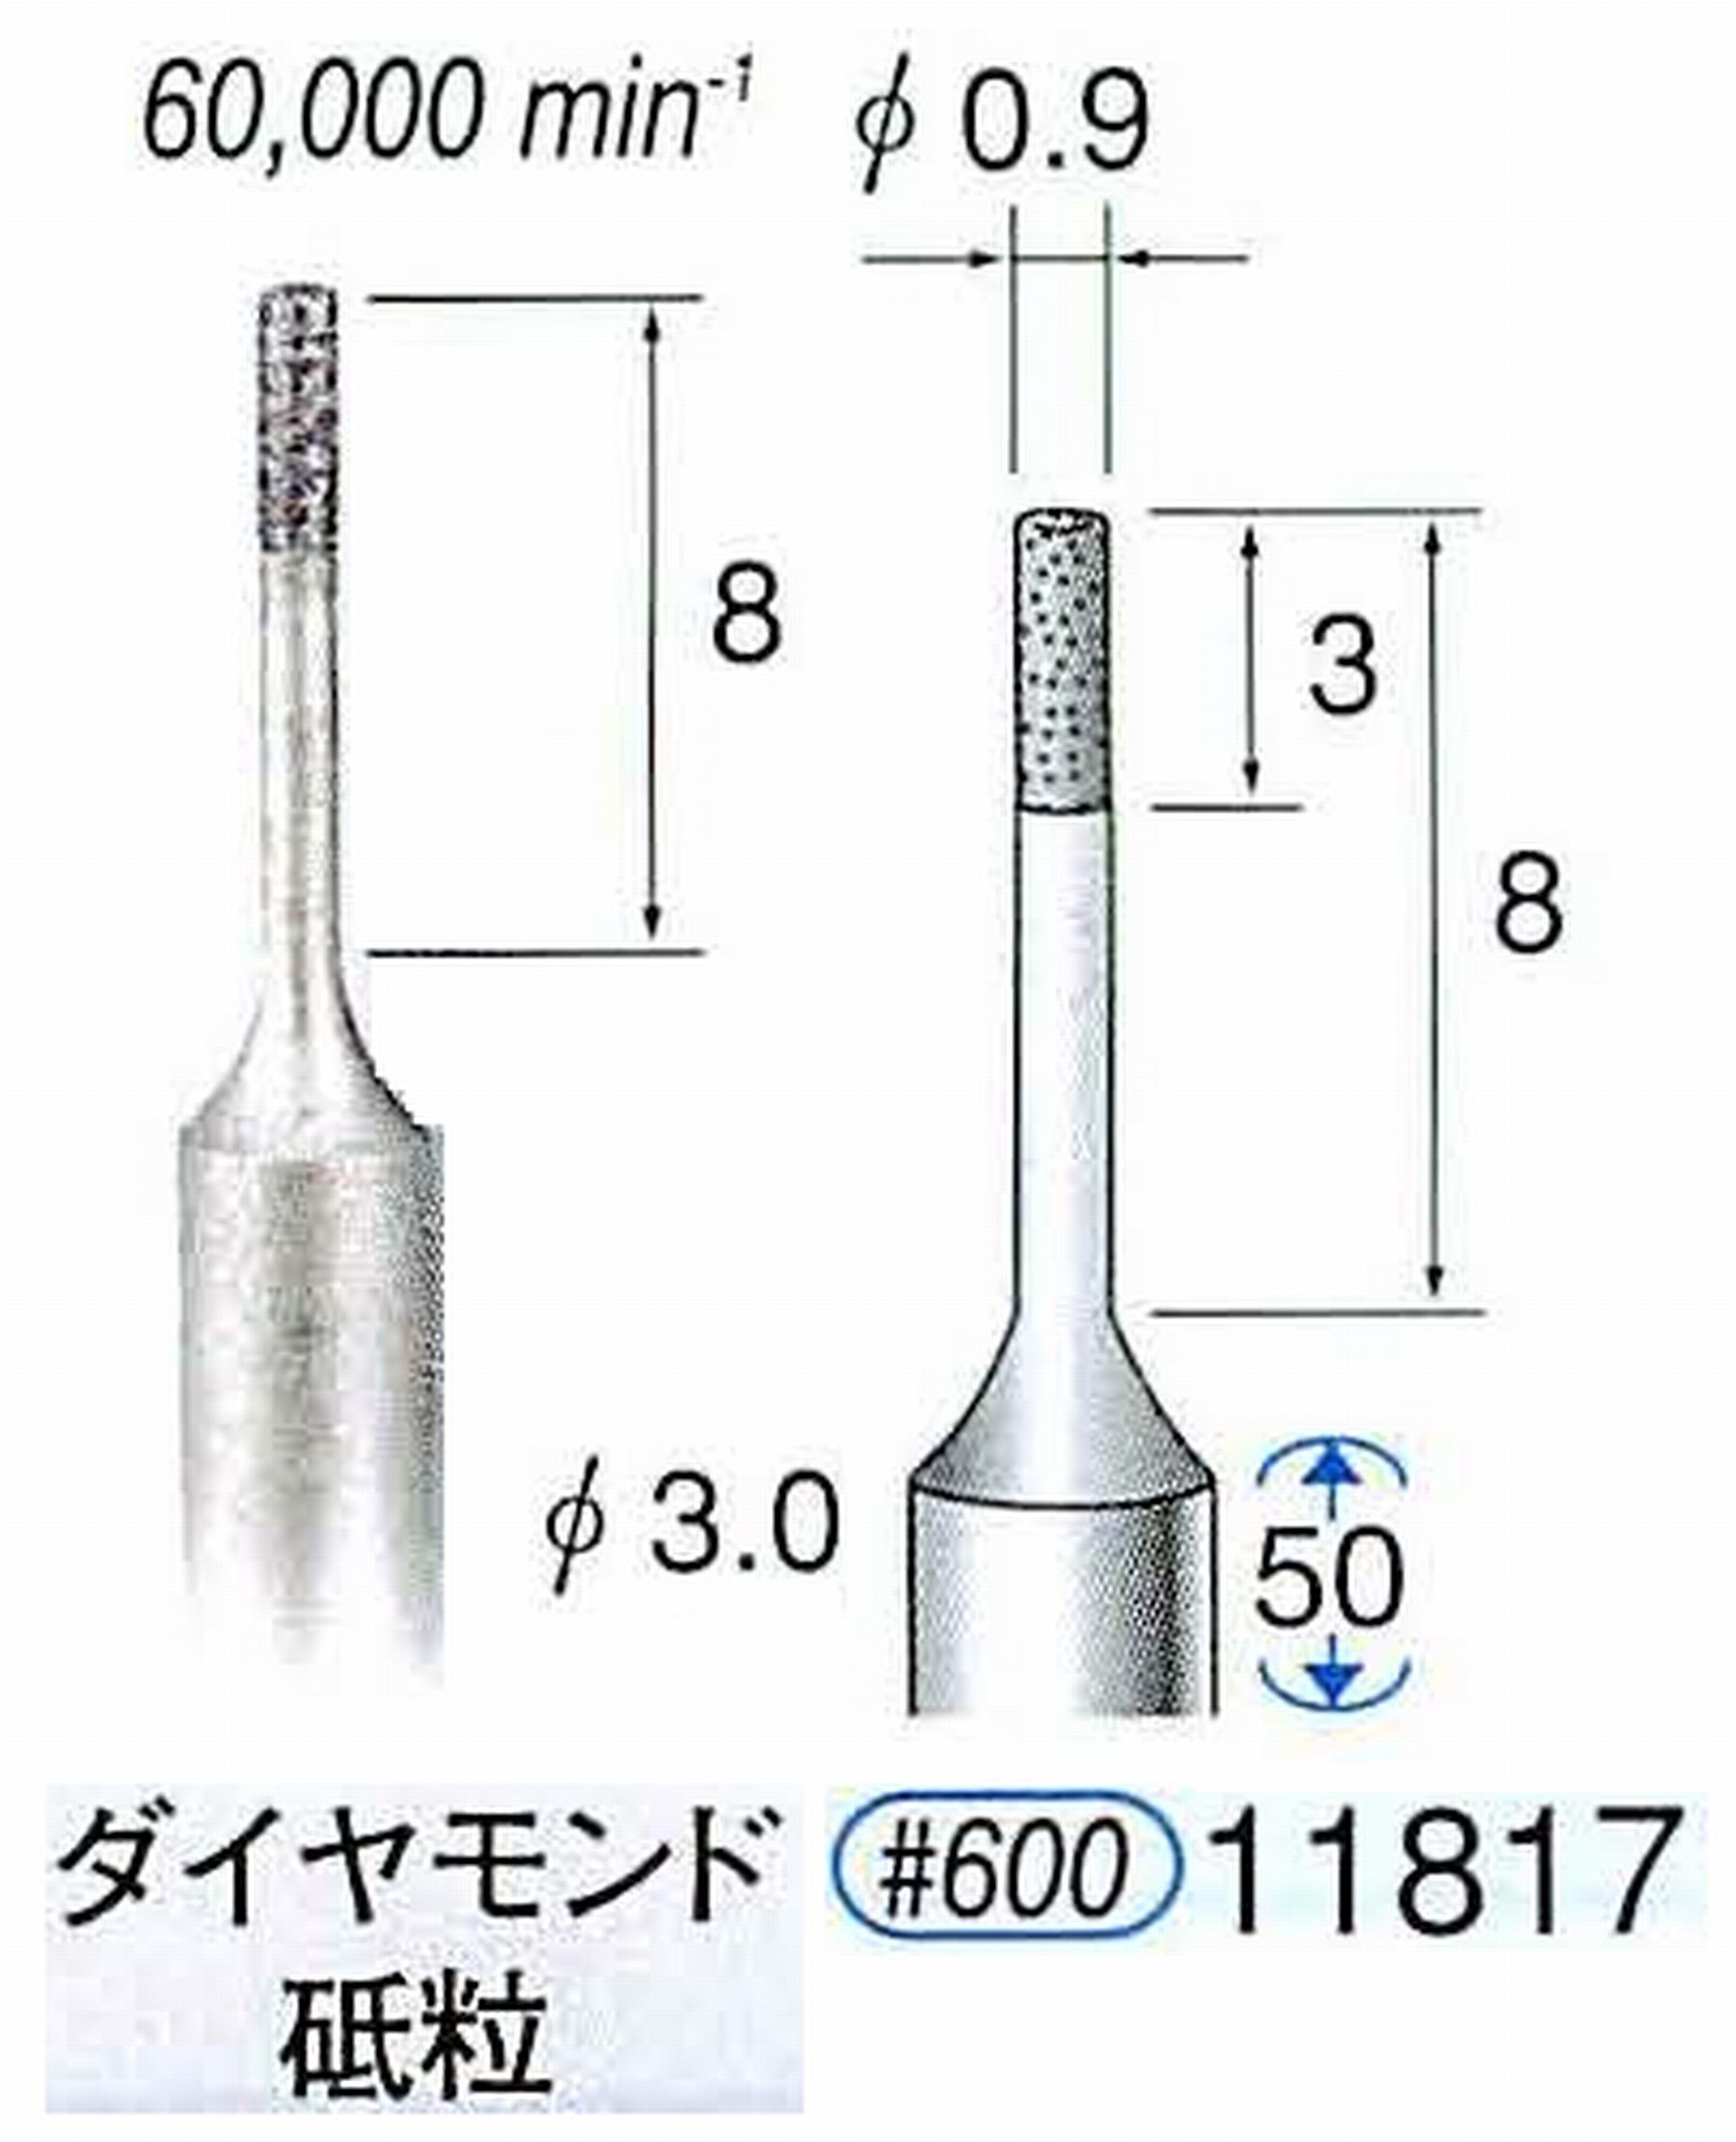 ナカニシ/NAKANISHI SP電着ダイヤモンド ダイヤモンド砥粒 軸径(シャンク)φ3.0mm 11817